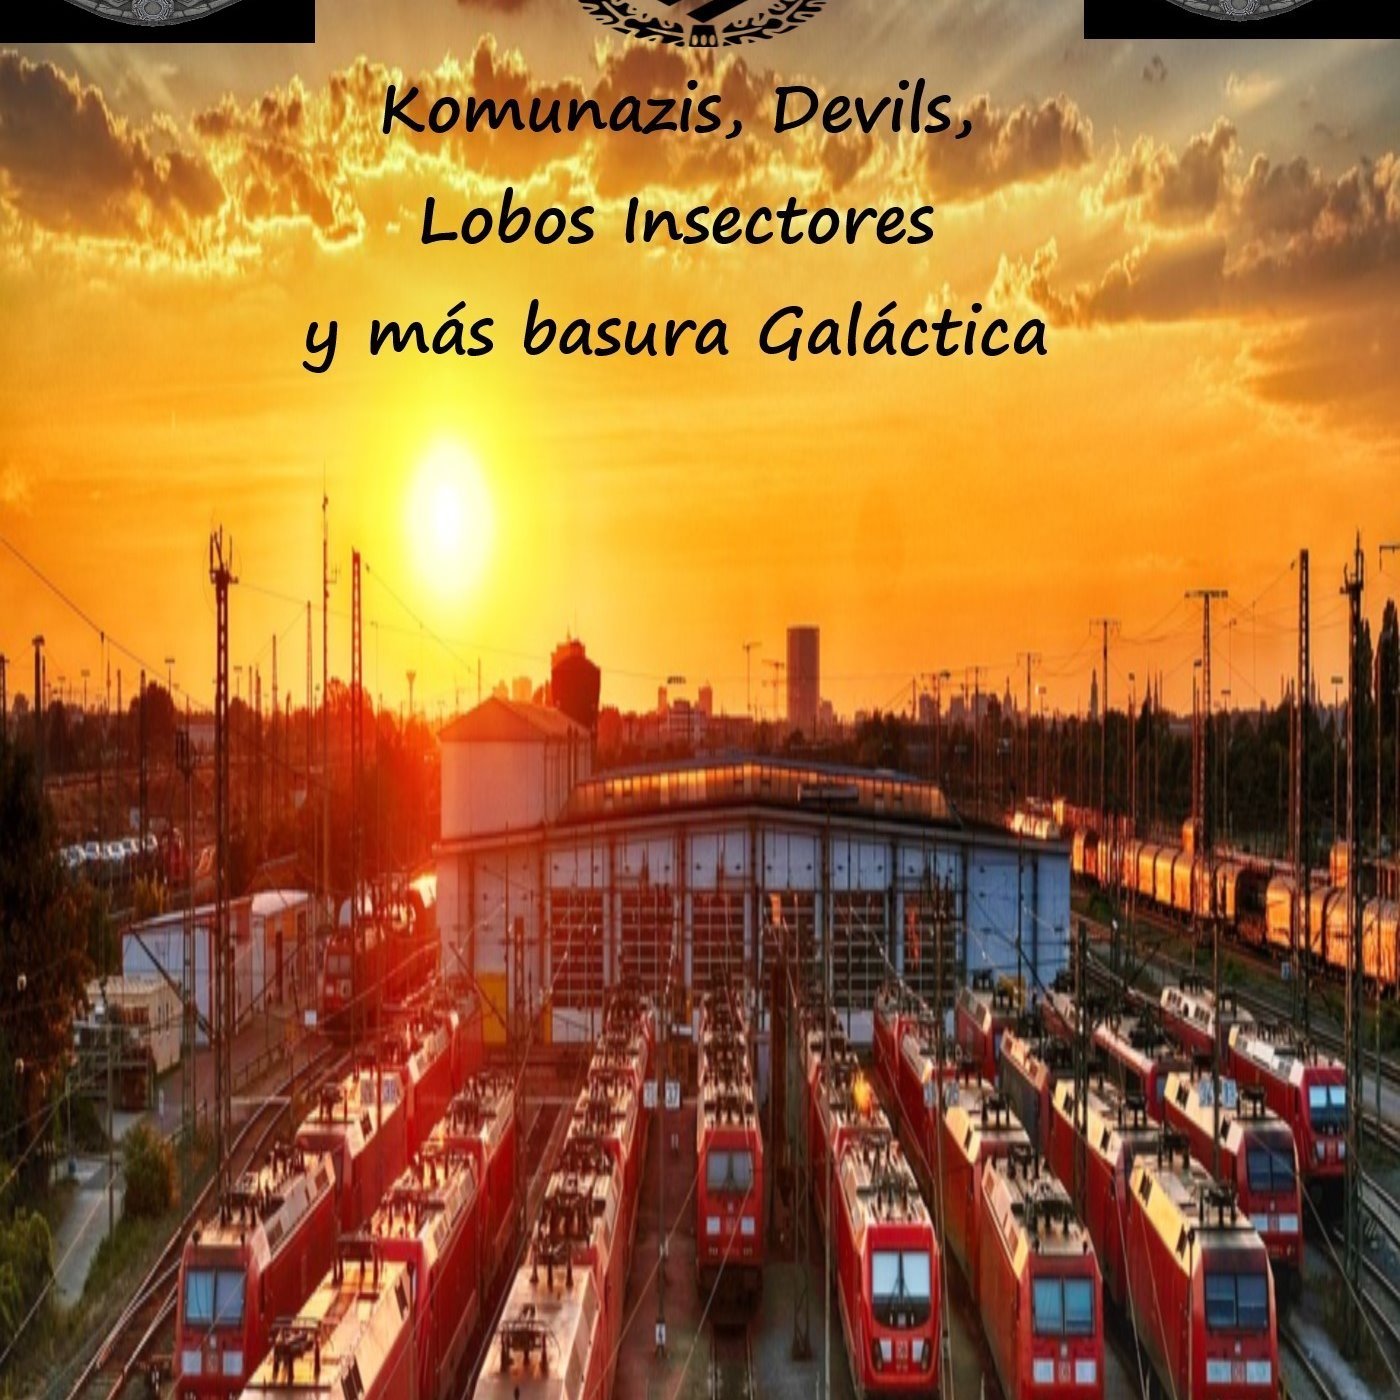 Autor de Komunazis, Devils, Lobos Insectores y más basura galáctica. Novela de ciencia ficción.